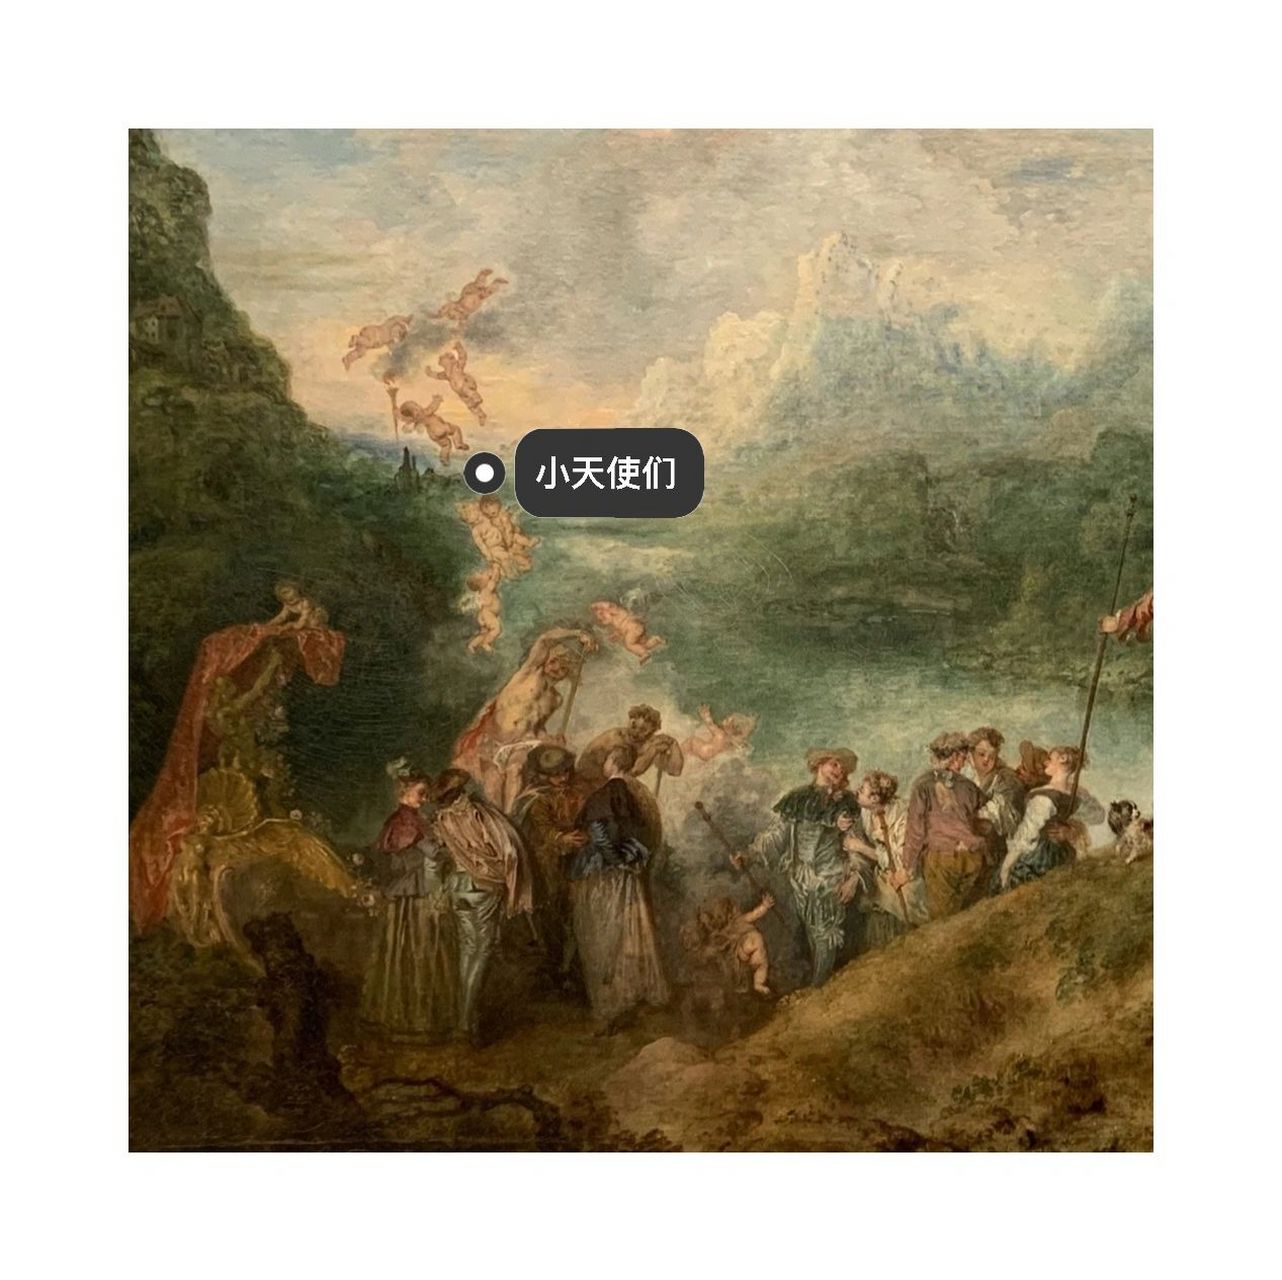 读画 ,华托《舟发西苔岛》里欢乐的忧伤 是法国18世纪洛可可时期最有